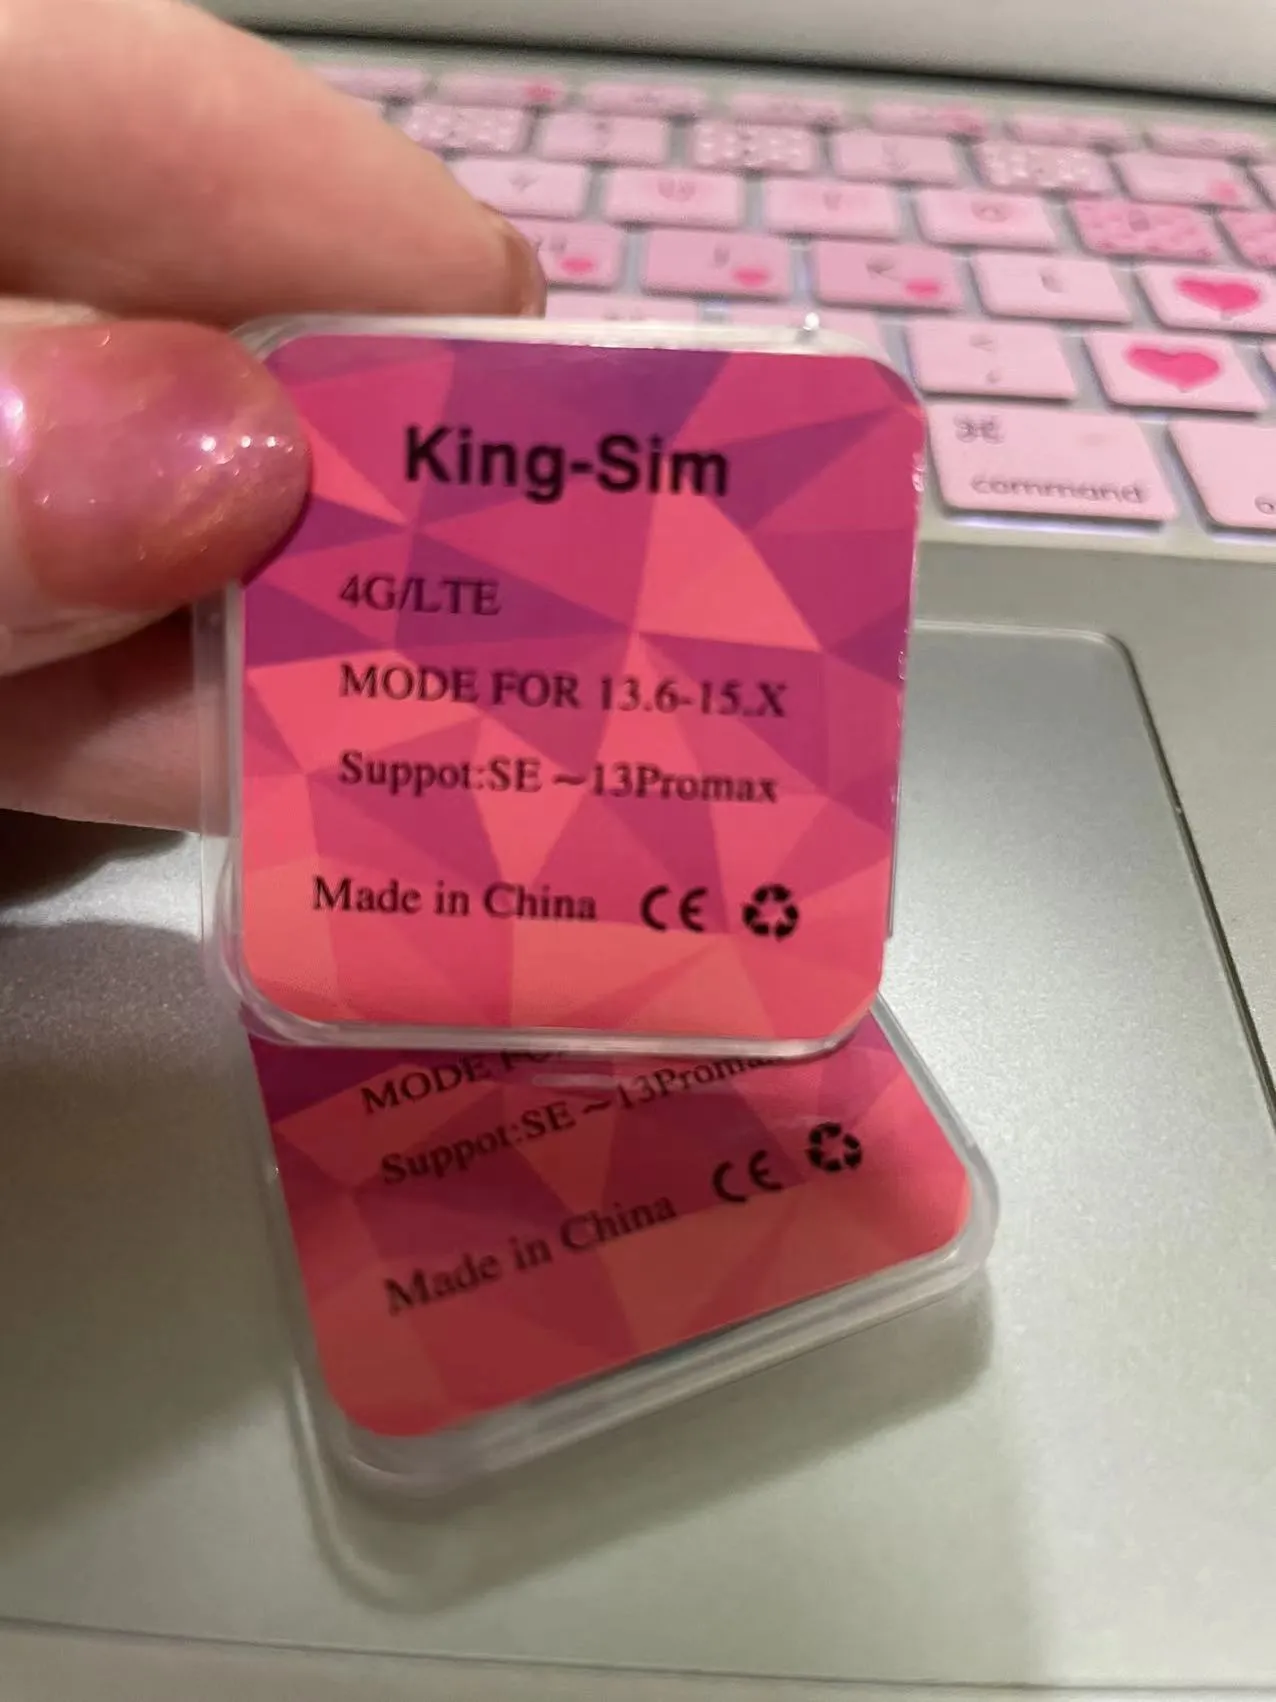 King-Sim 4Glte prend en charge IOS13. X-16 X qui contient le mode ICCID Mode Modemanual Automatic